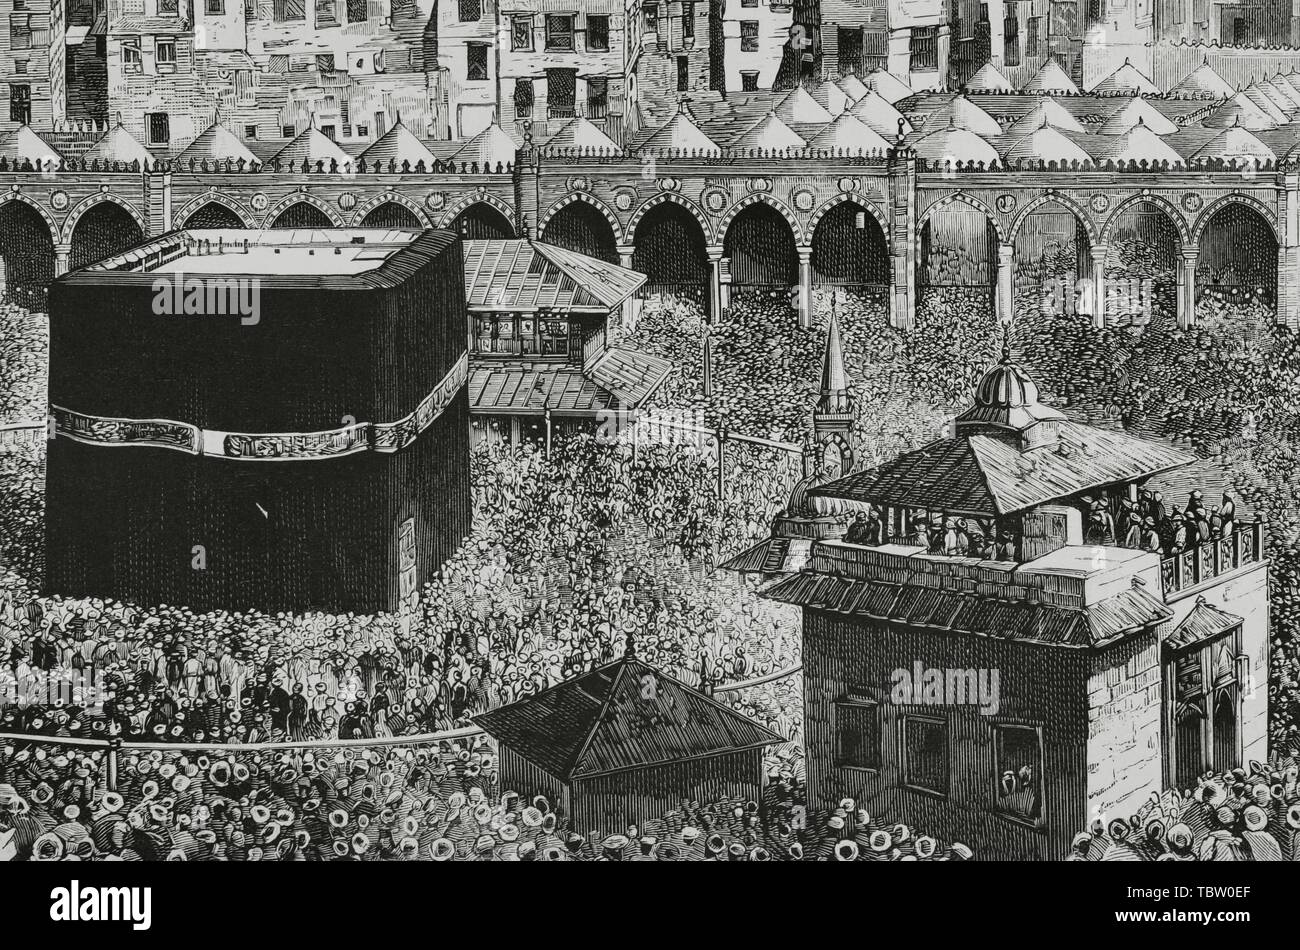 Arabia Saudí. La Meca. Vista del Patio central de la Mezquita Masjid al-Haram, donde se encuentra La Kaaba, que Alberga la'Piedra Negra". Grabado de La Ilustración Española y Americana, 15 de abril de 1882. Las Mejores. Stockfoto